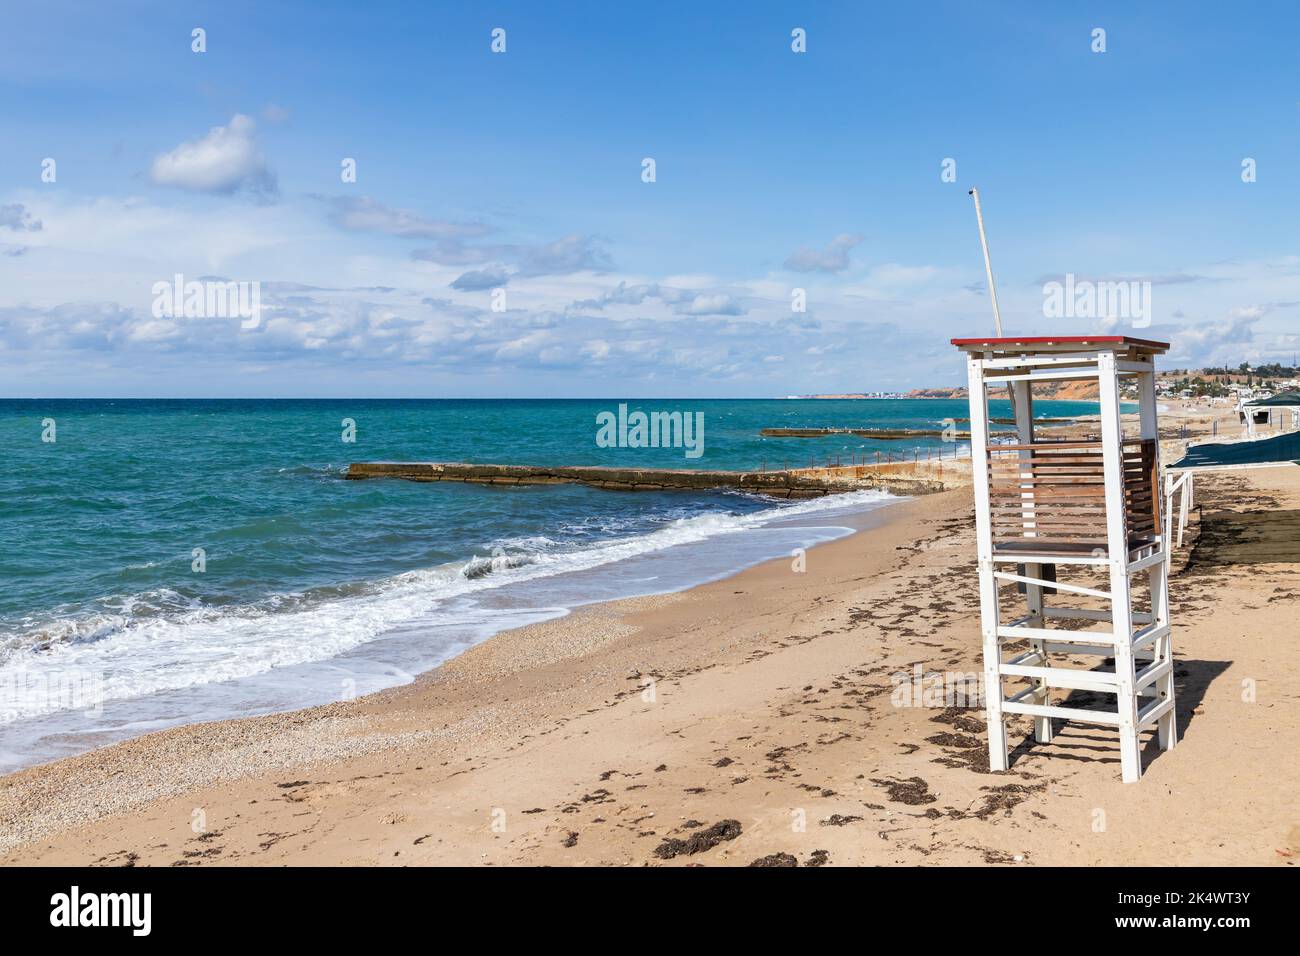 Une tour de sauvetage à la plage vide. Côte de mer Noire, paysage de Crimée Banque D'Images